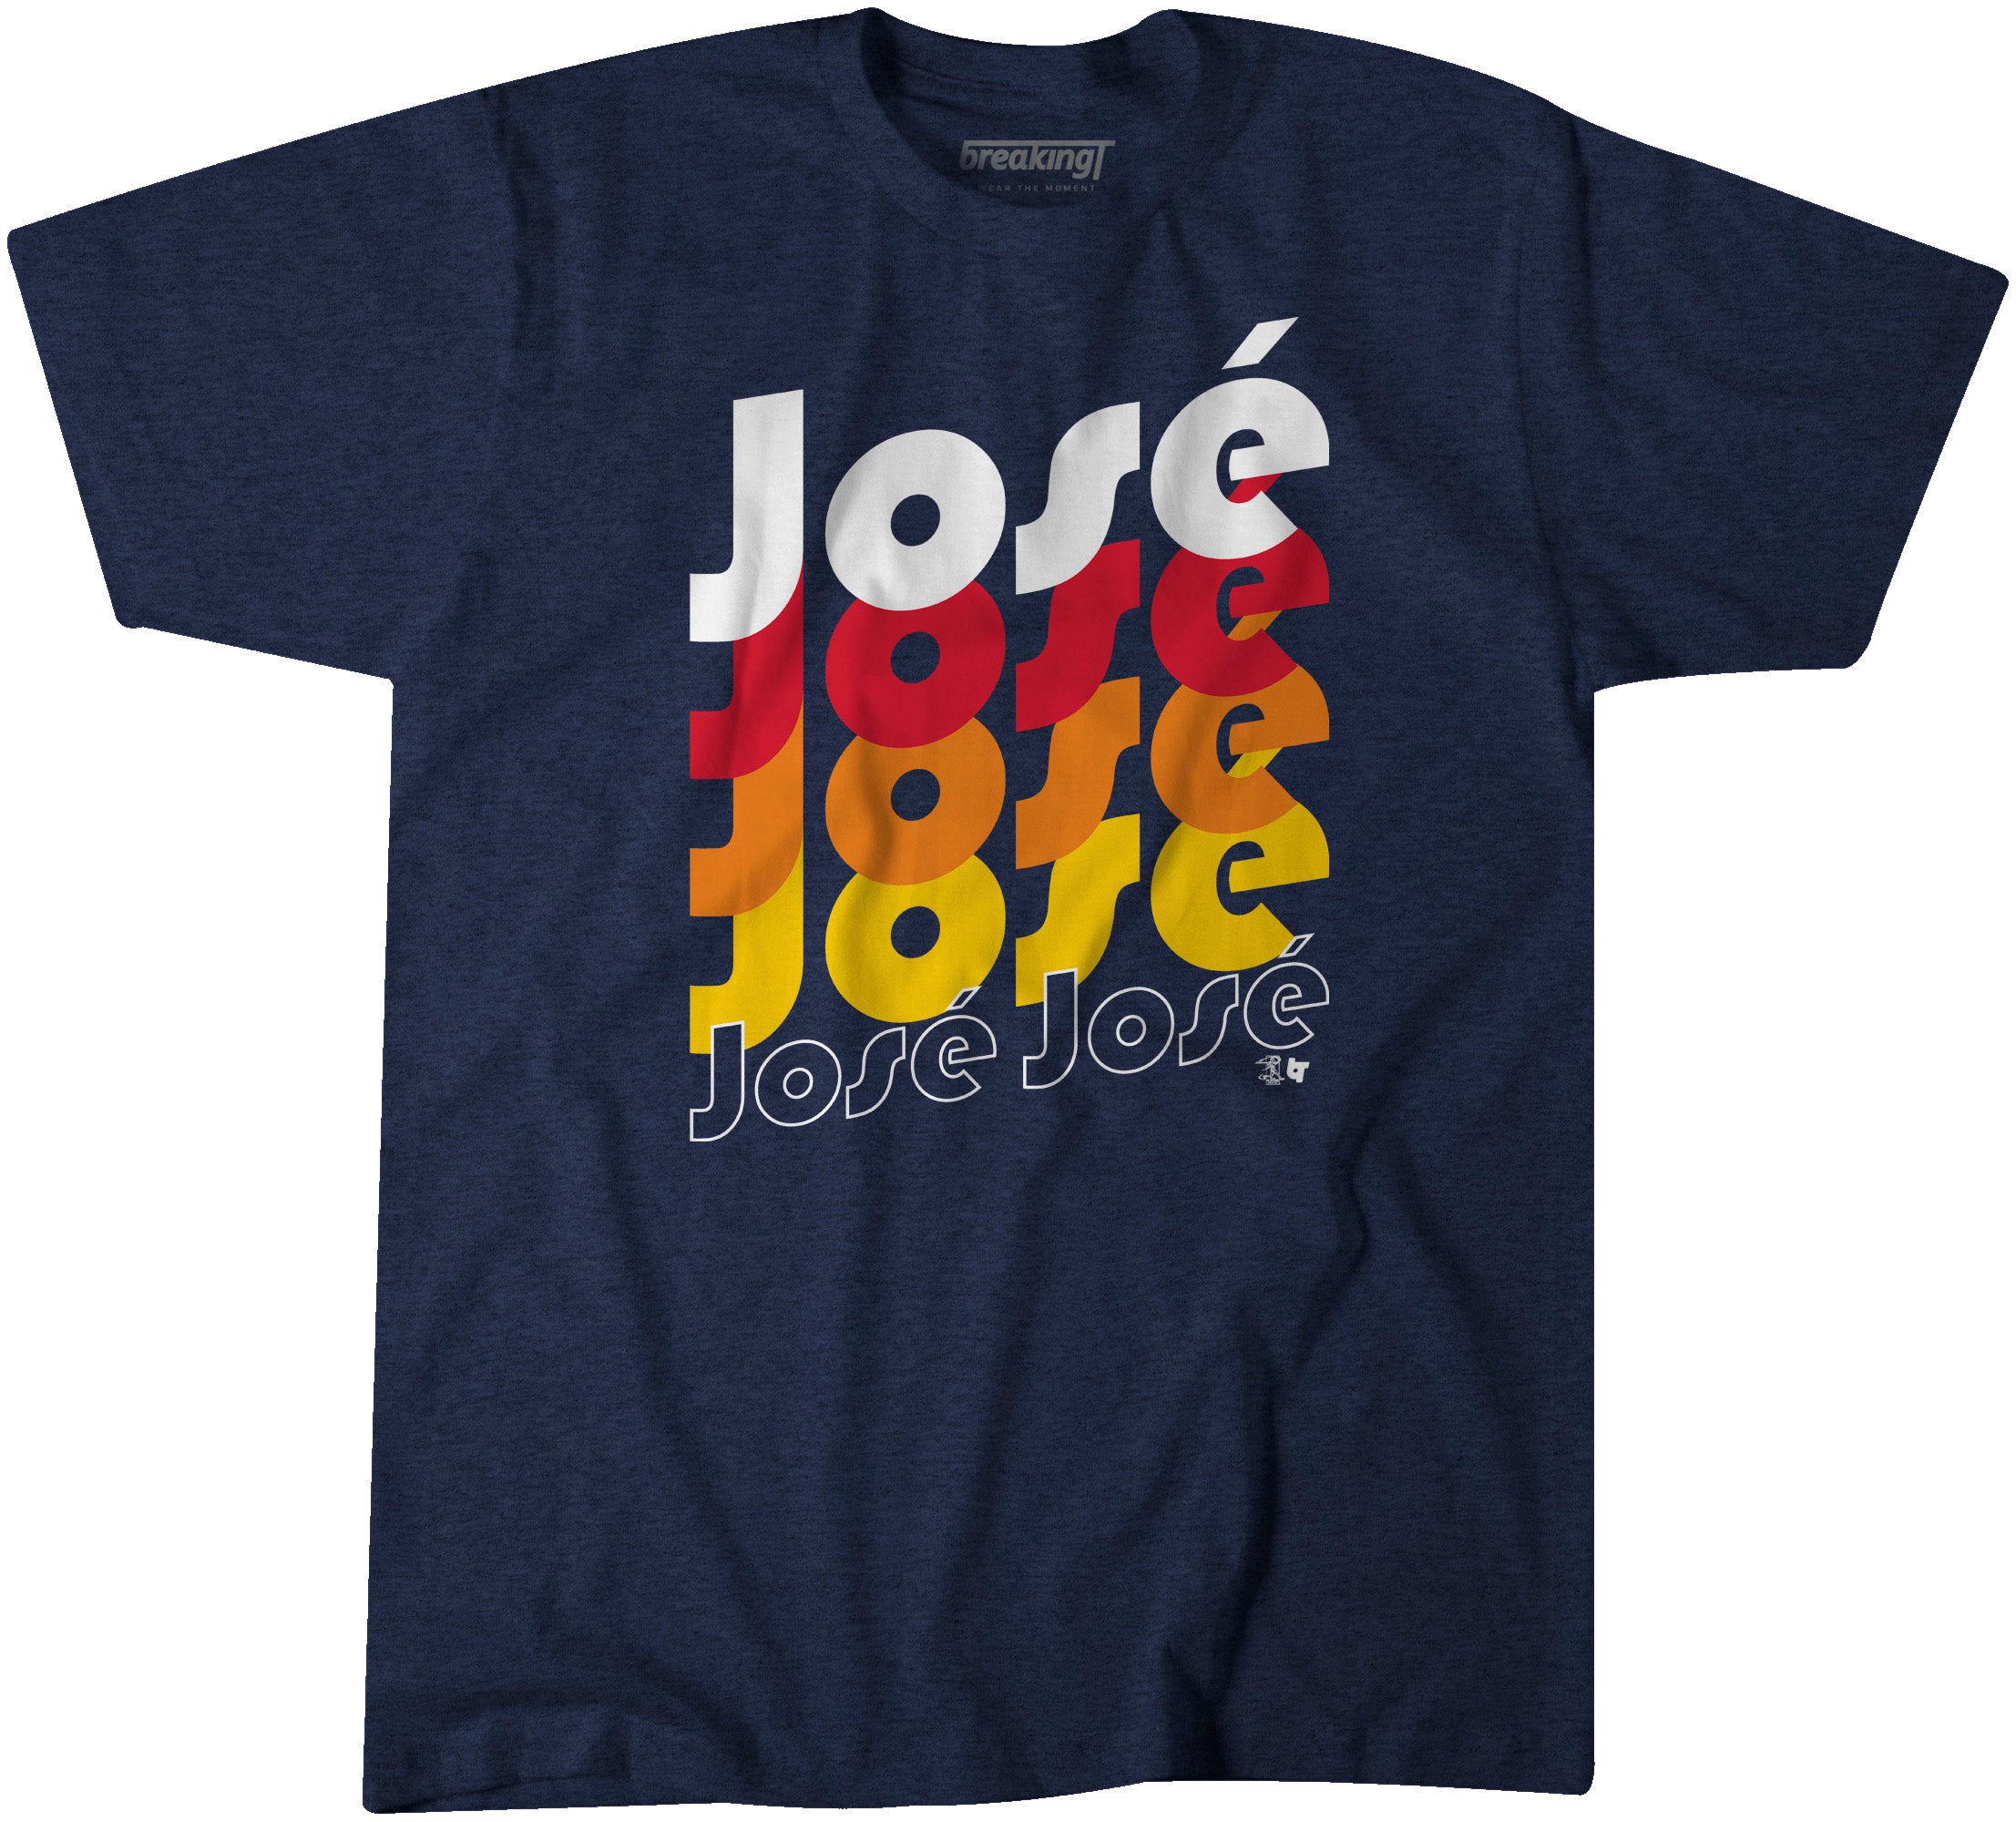 Jose Jose Jose, 5XL - MLB - Blue - Sports Fan Gear | breakingt